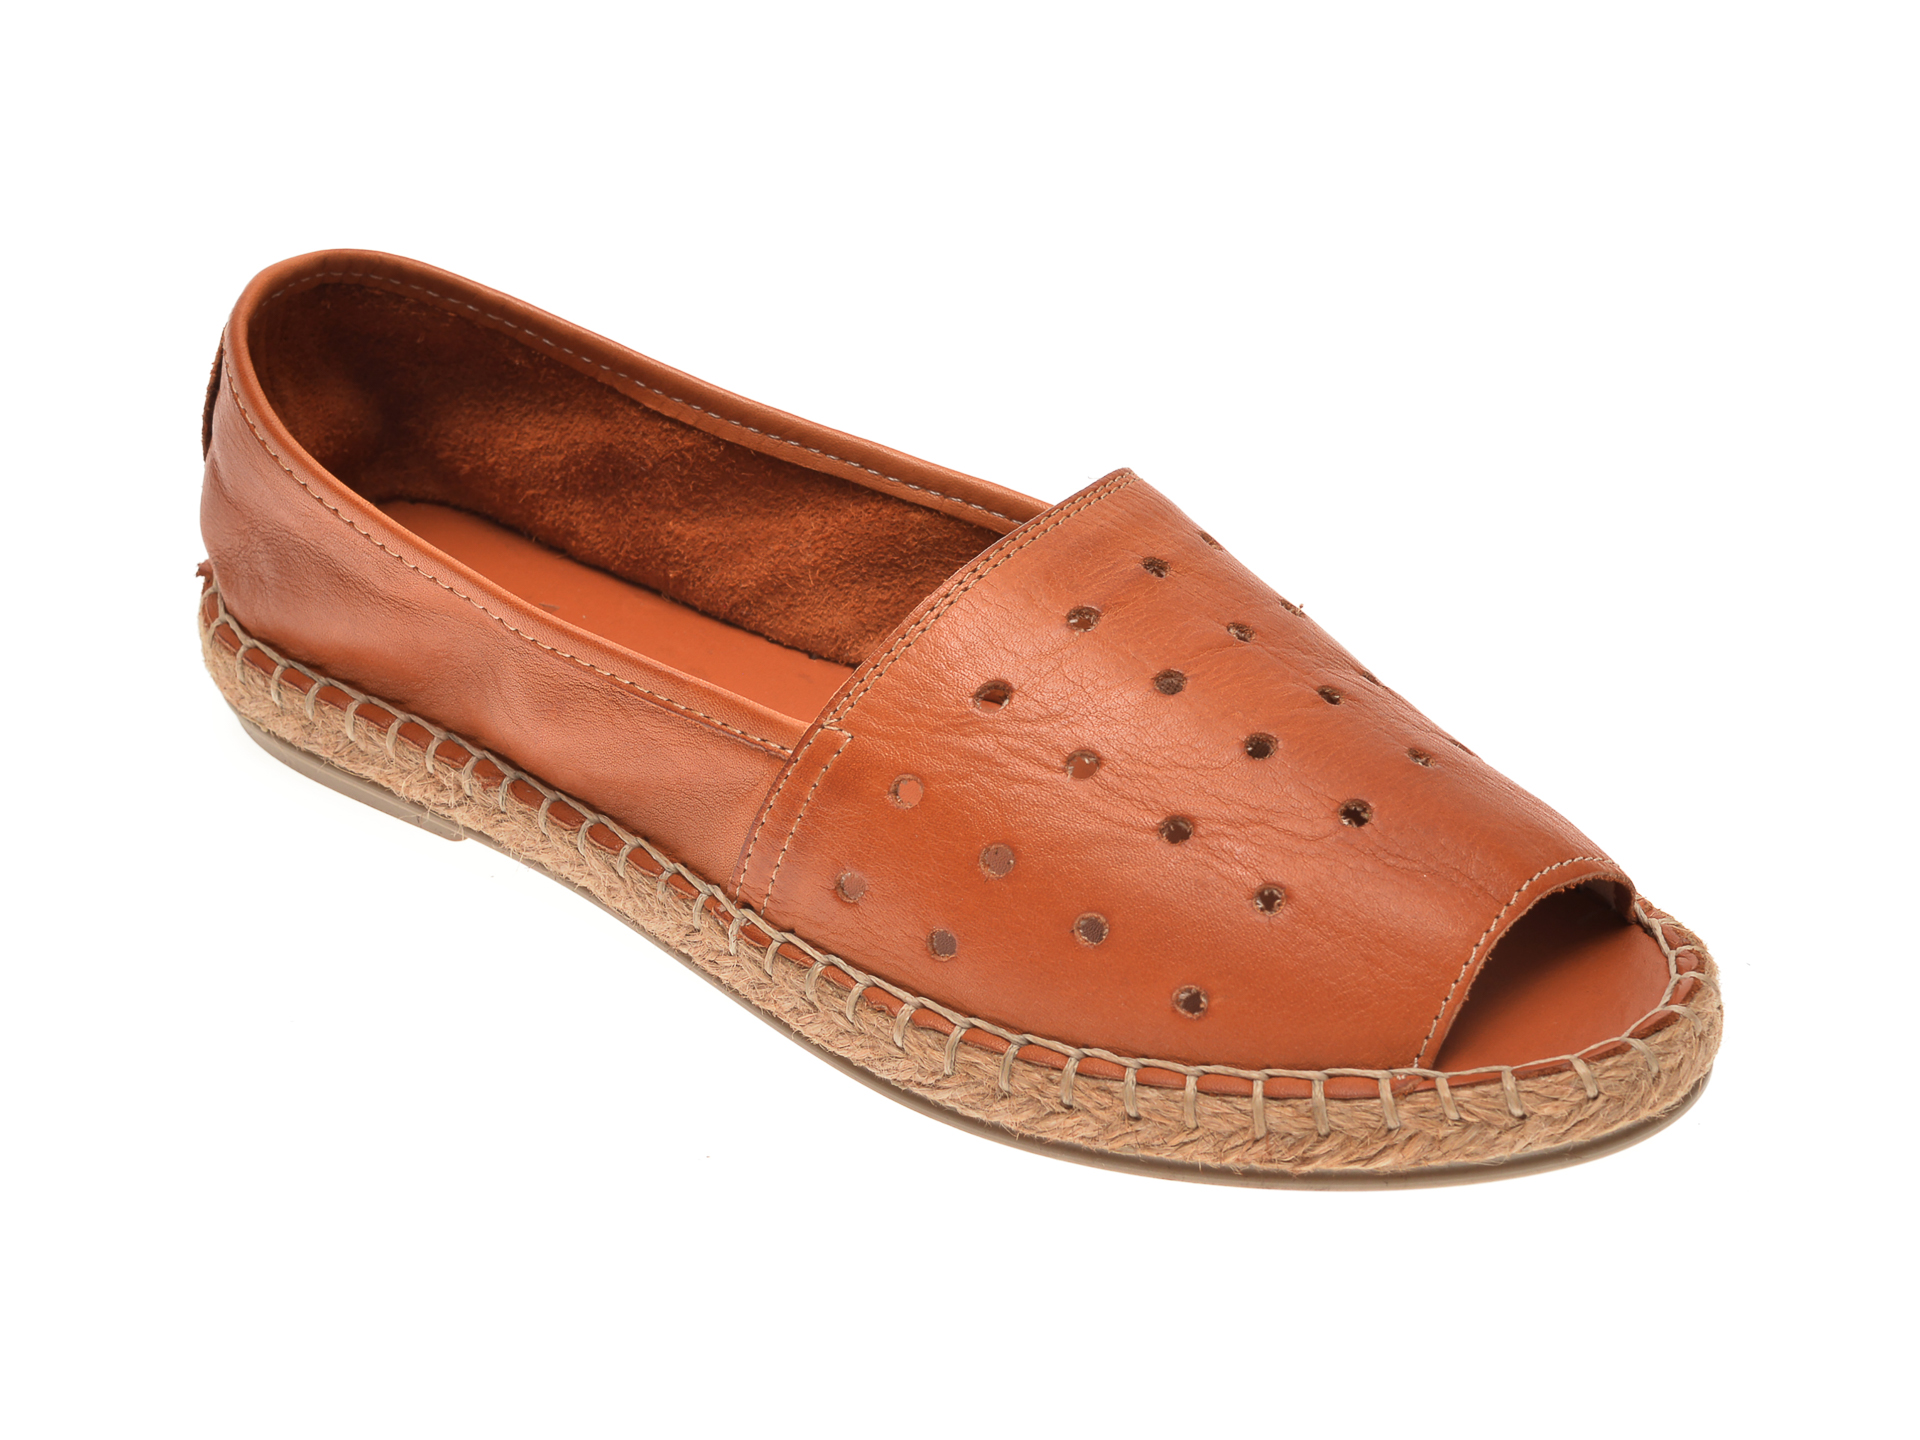 Pantofi MESSIMODA maro, 18Y1155, din piele naturala